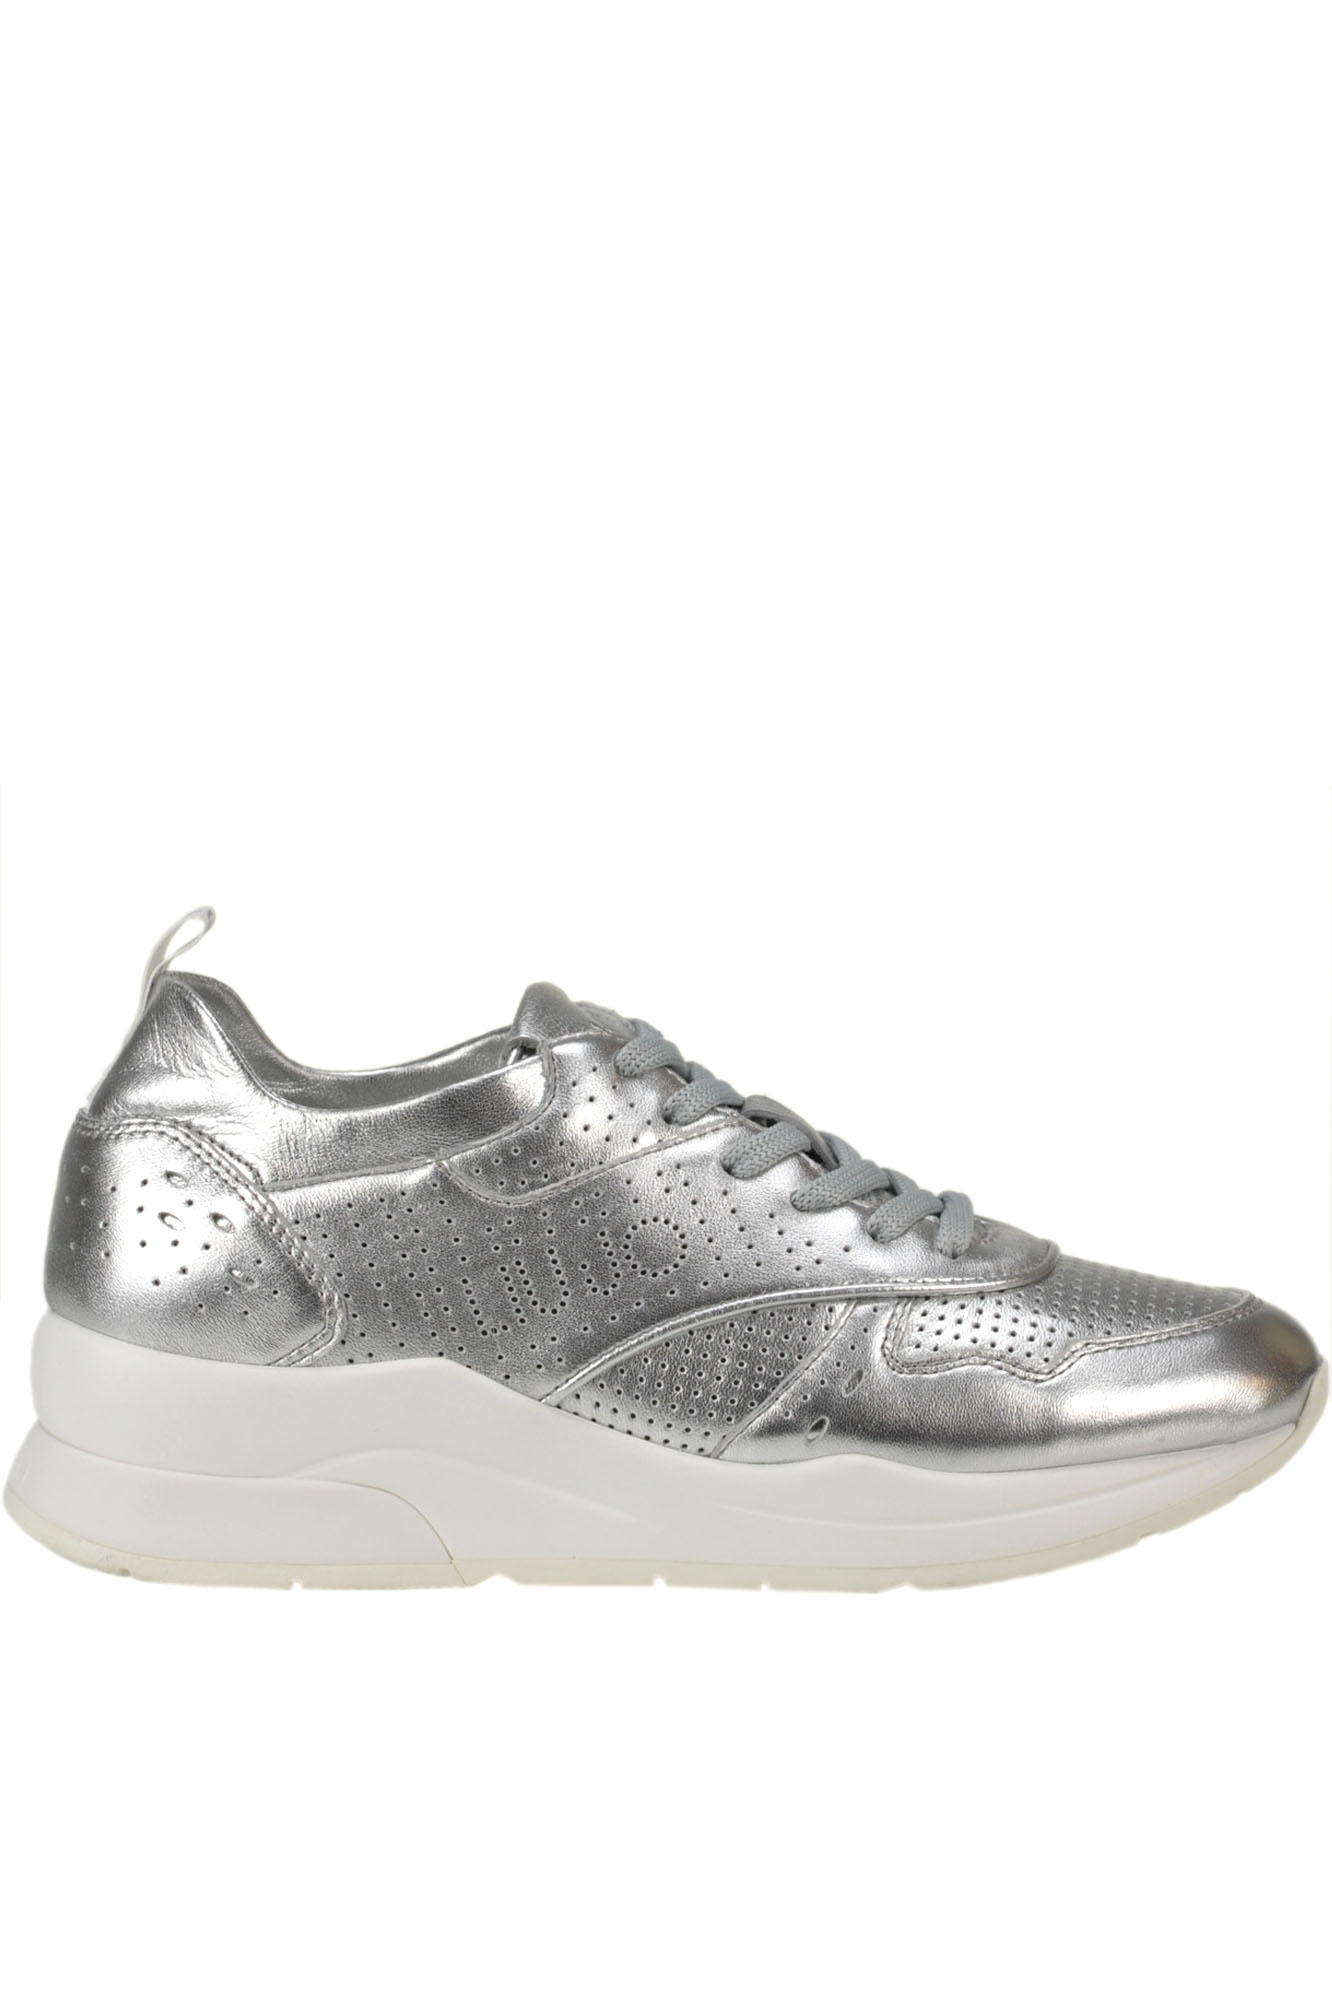 Liu •jo Karlie Metallic Effect Leather Sneakers In Silver